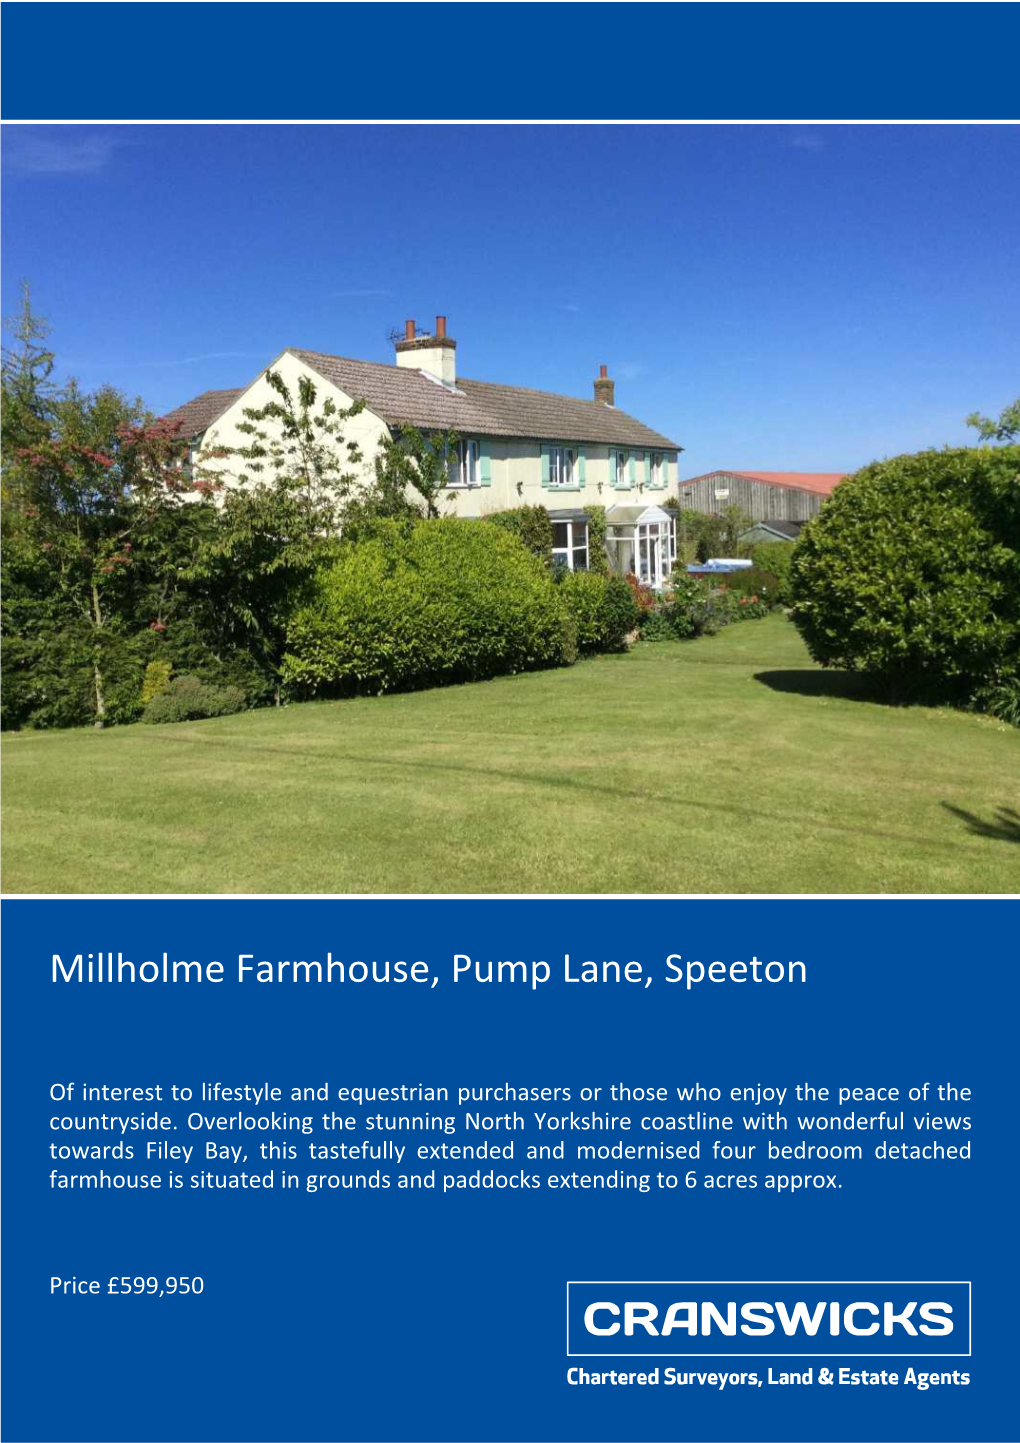 Millholme Farmhouse, Pump Lane, Speeton